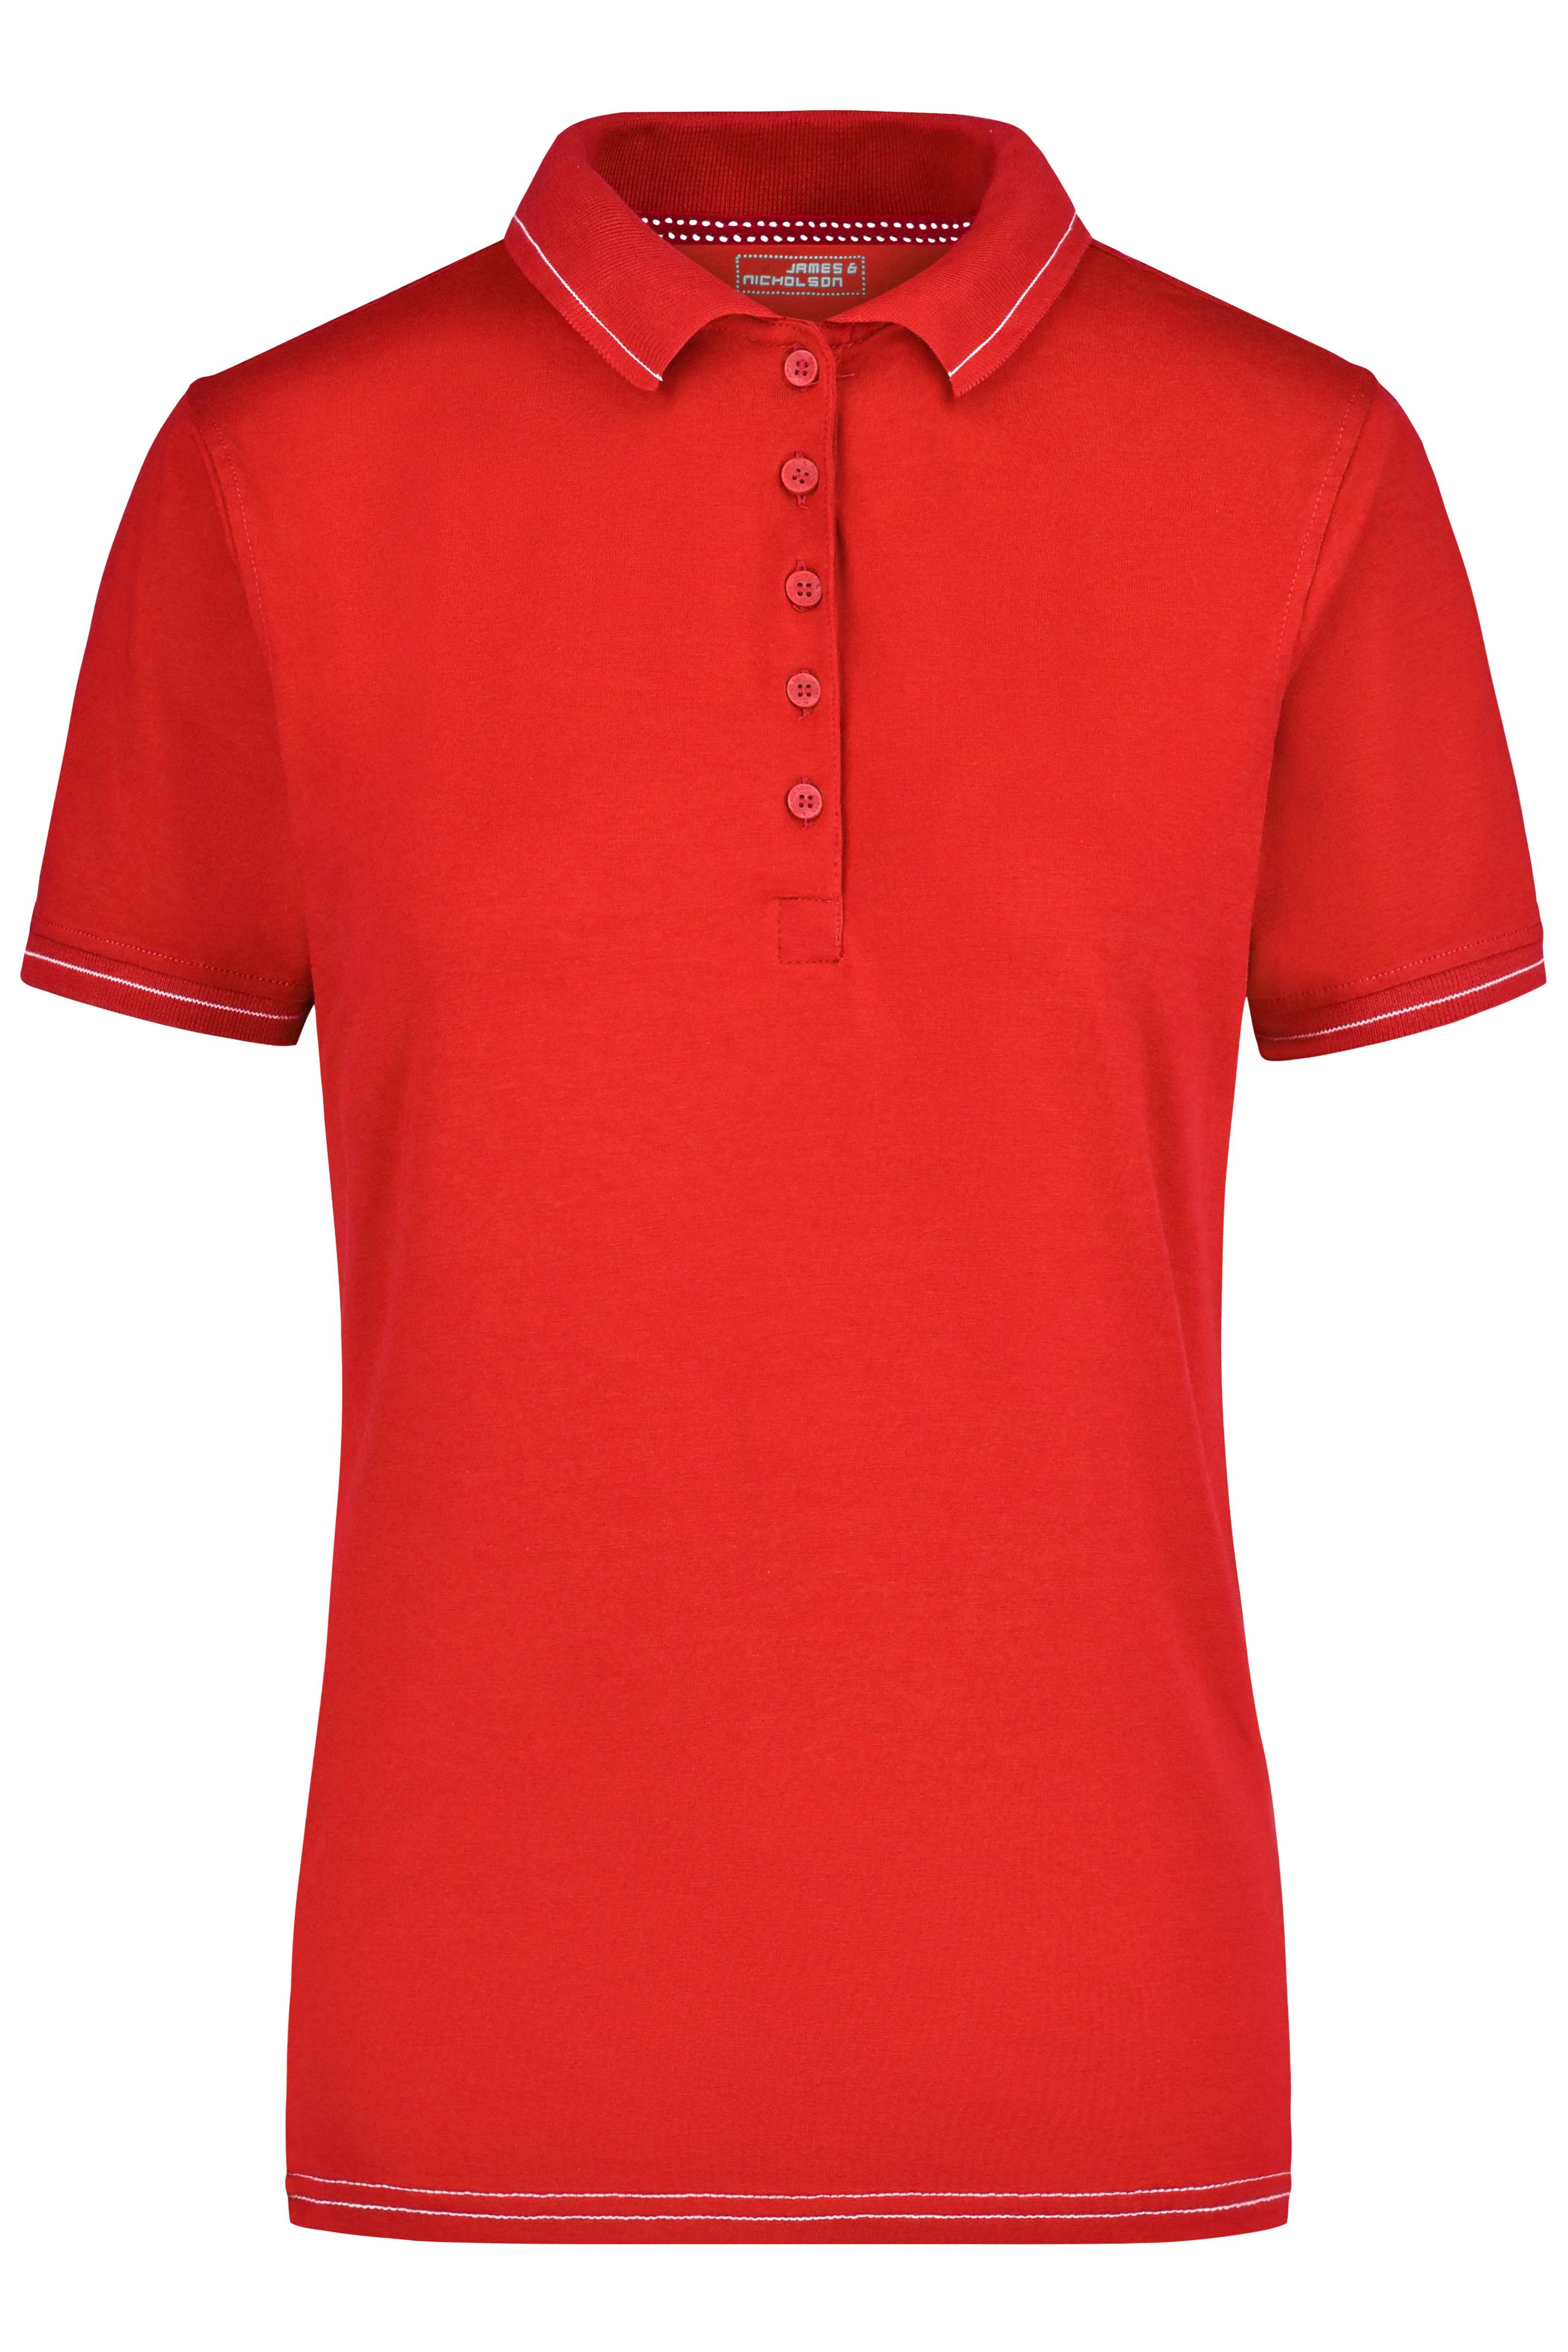 Ladies' Elastic Polo JN568 Hochwertiges Poloshirt mit Kontraststreifen